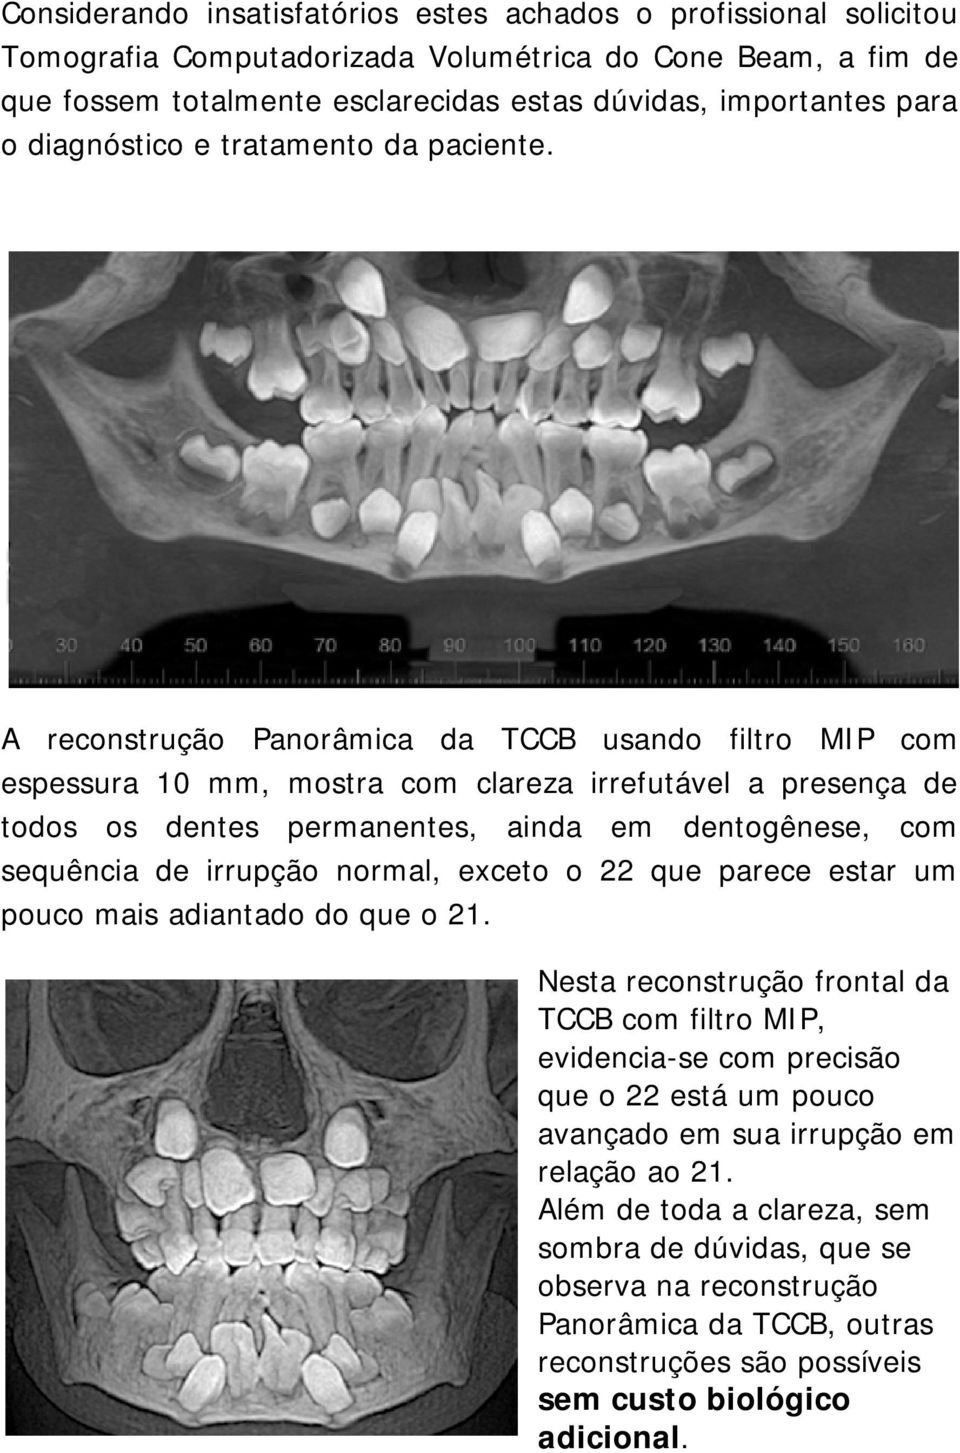 A reconstrução Panorâmica da TCCB usando filtro MIP com espessura 10 mm, mostra com clareza irrefutável a presença de todos os dentes permanentes, ainda em dentogênese, com sequência de irrupção